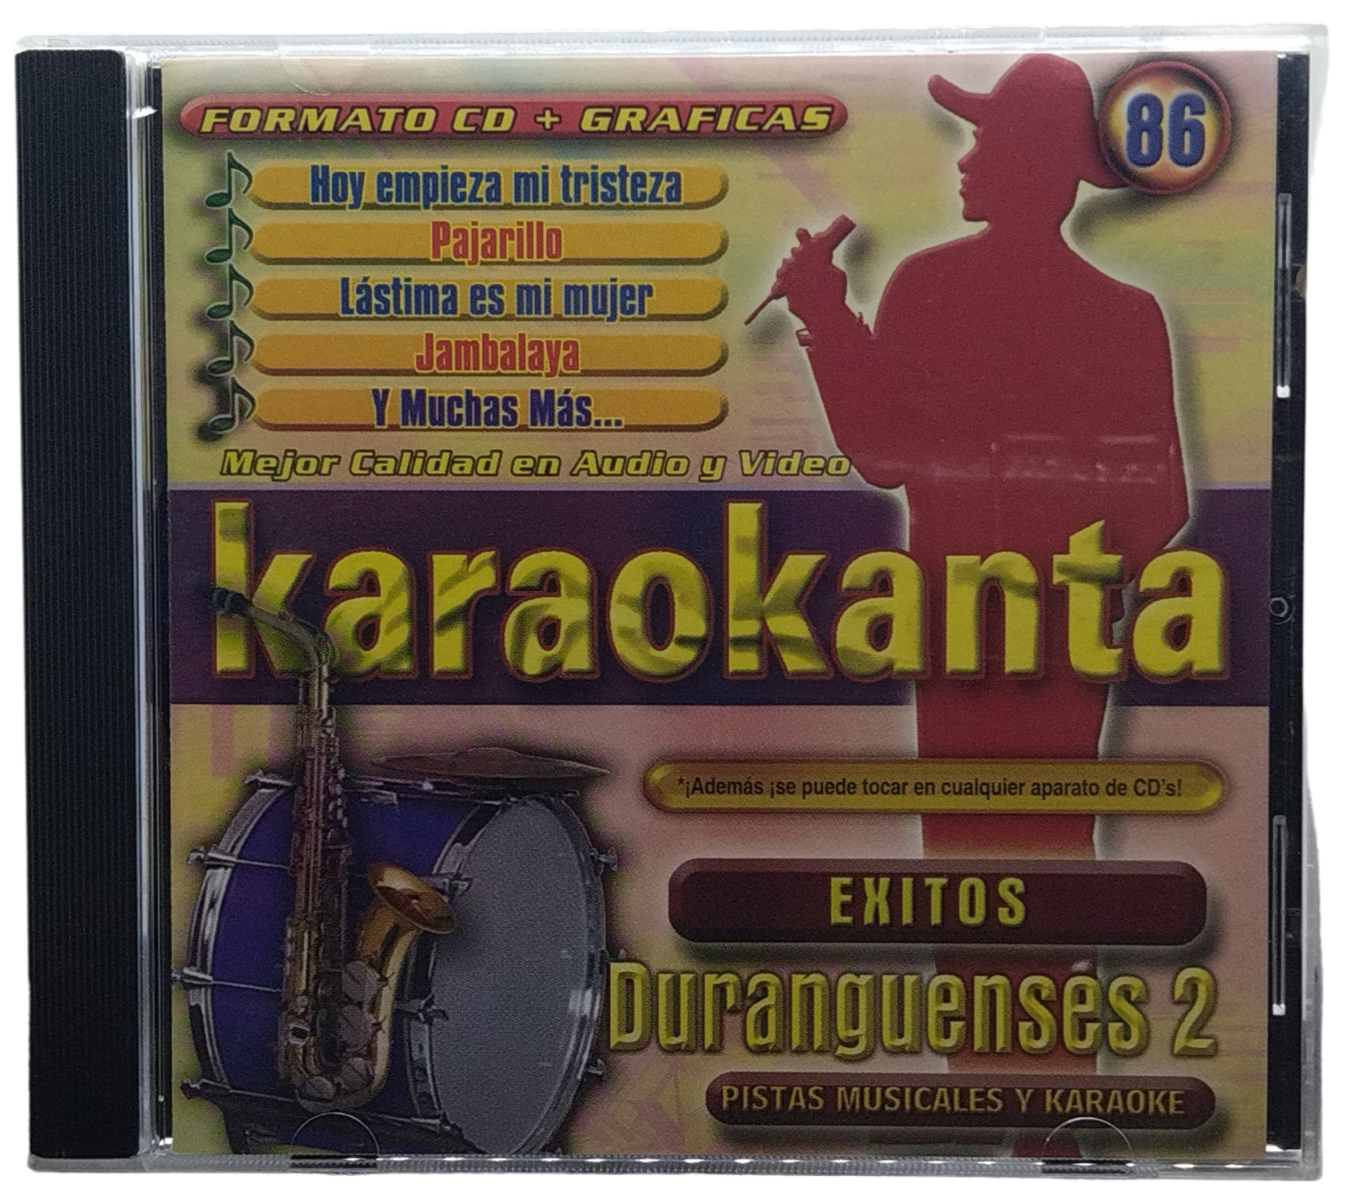 karaokanta  - canta como exitos duranguenses 2